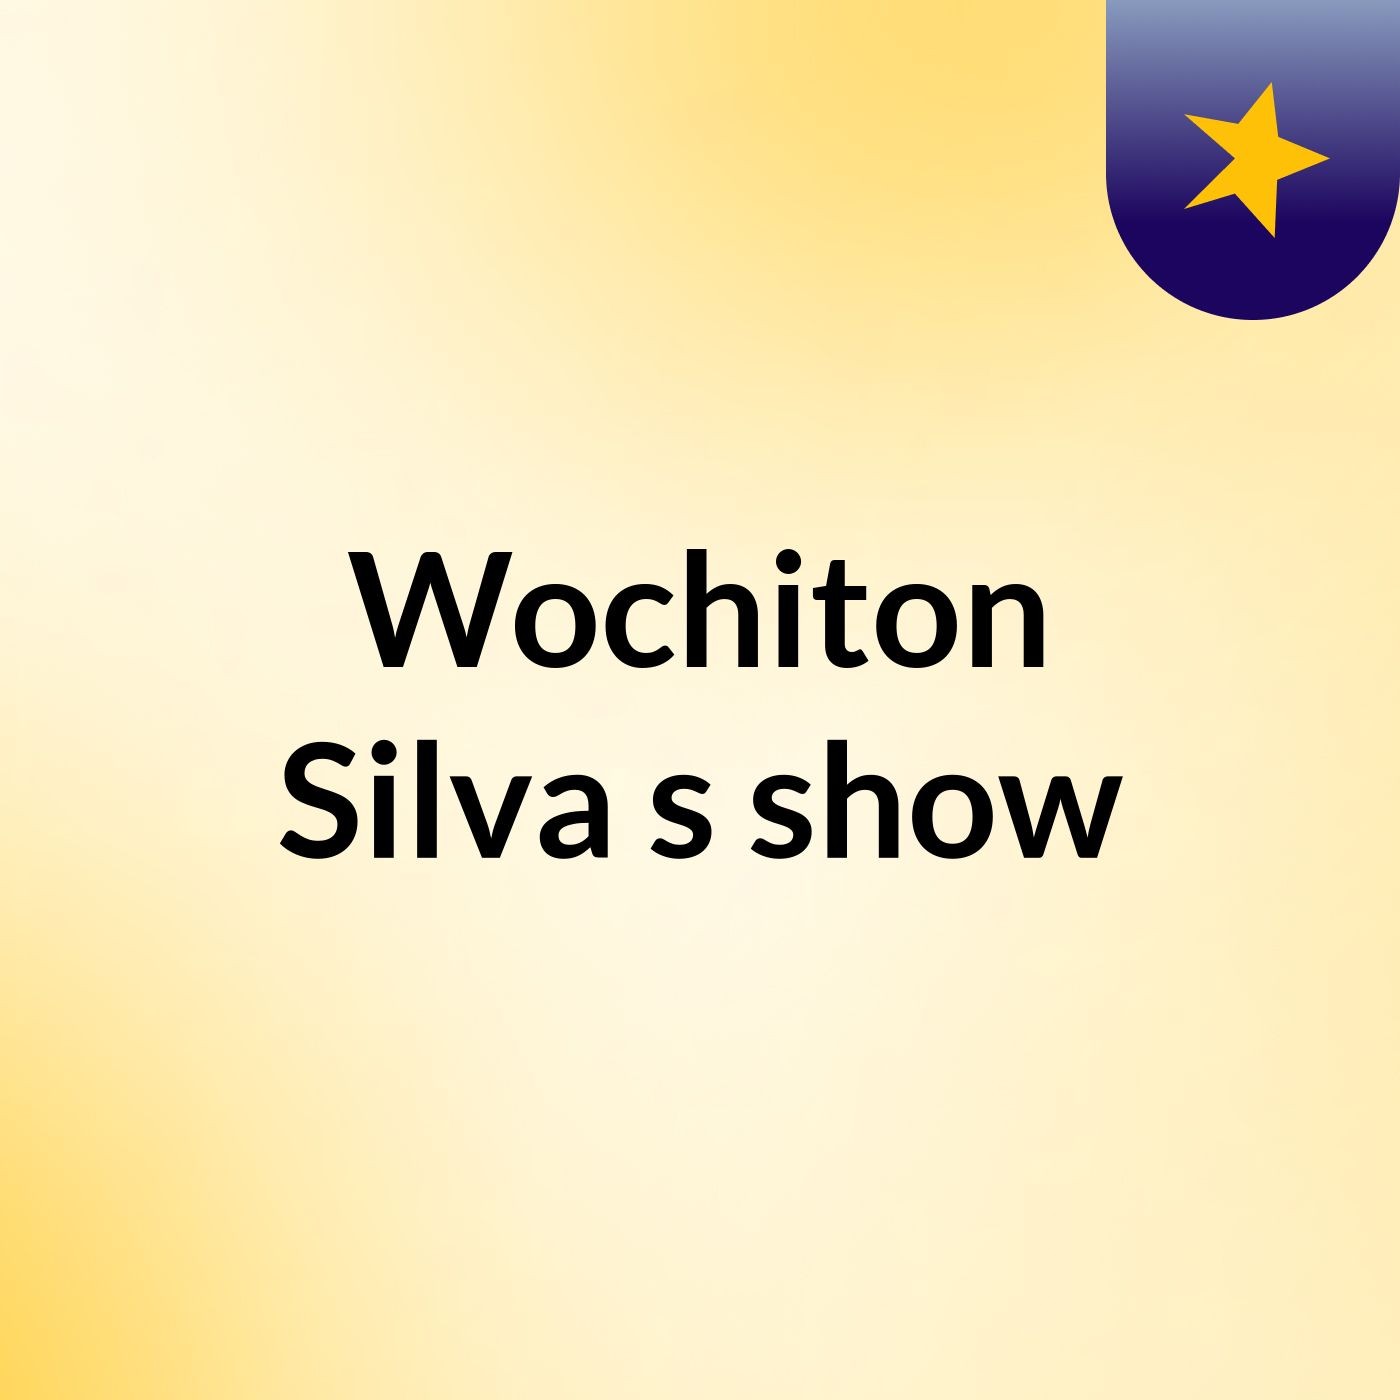 Wochiton Silva's show